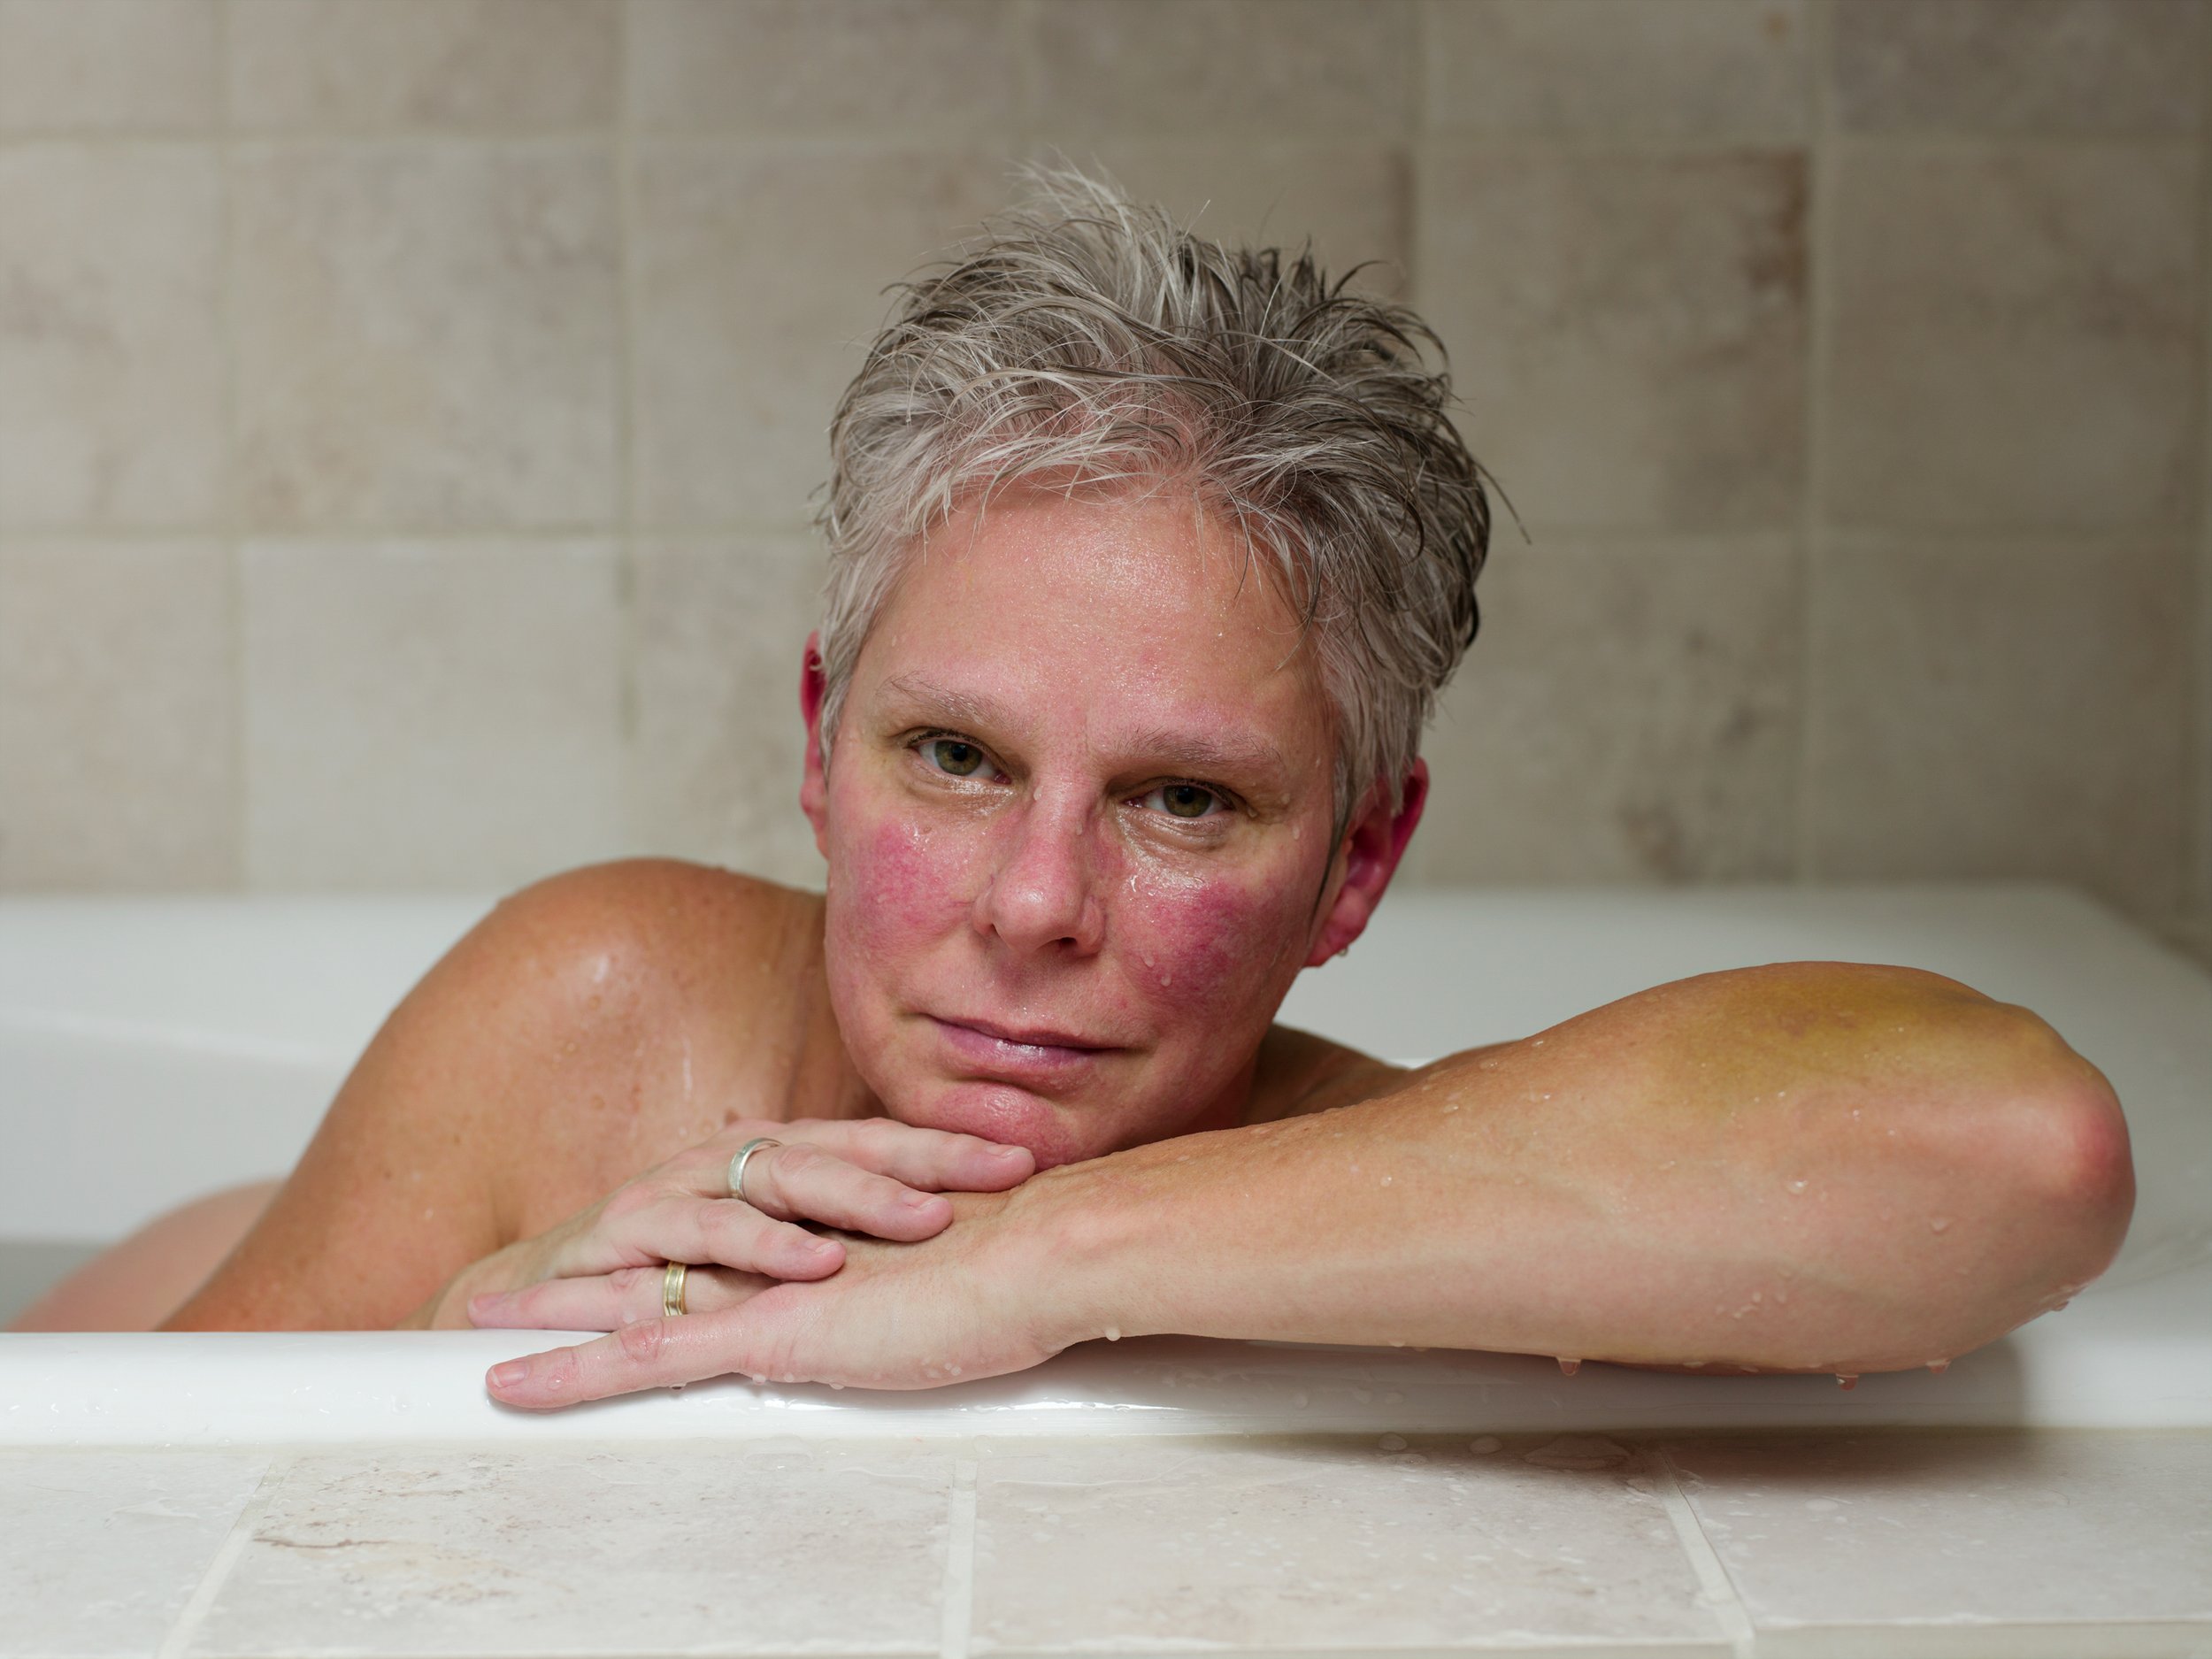  Mom (bathtub), 2014 